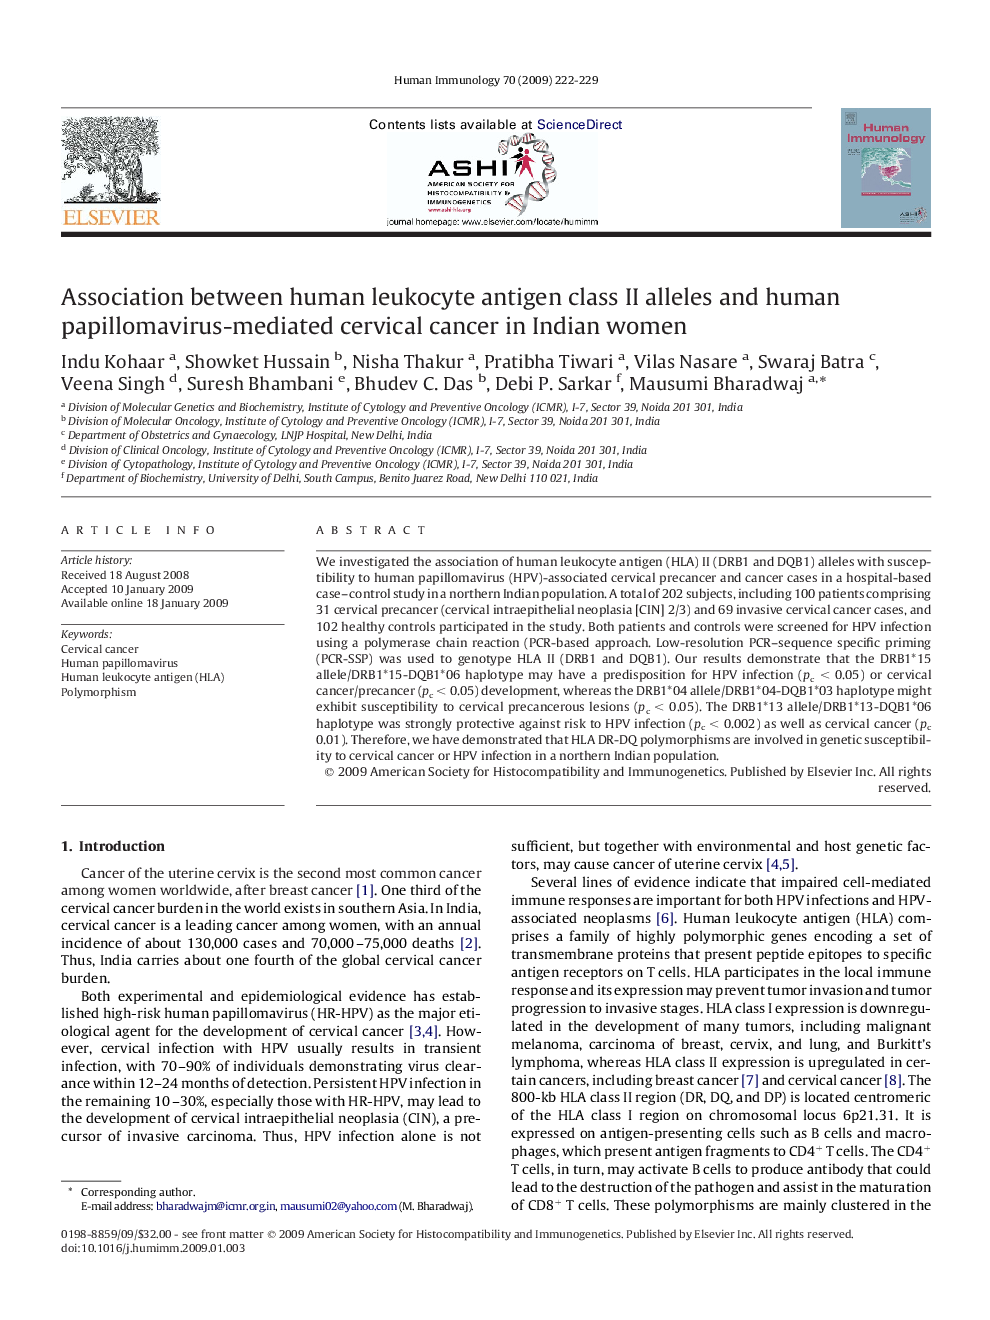 Association between human leukocyte antigen class II alleles and human papillomavirus-mediated cervical cancer in Indian women